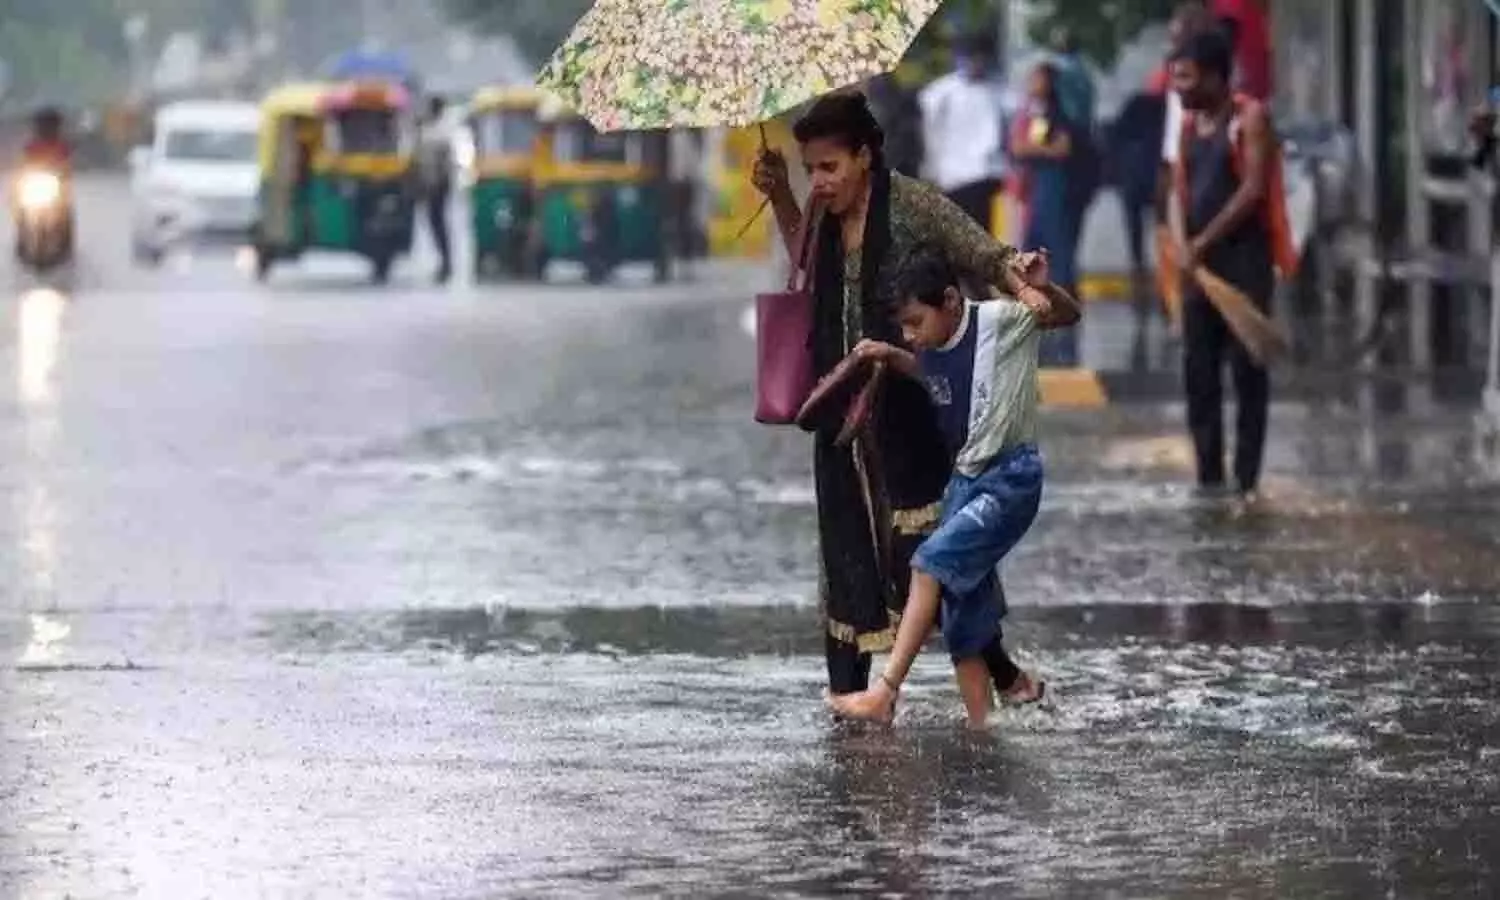 2 से 4 जनवरी तक रीवा-सीधी में भारी बारिश की चेतावनी, मौसम विभाग ने जारी किया अलर्ट